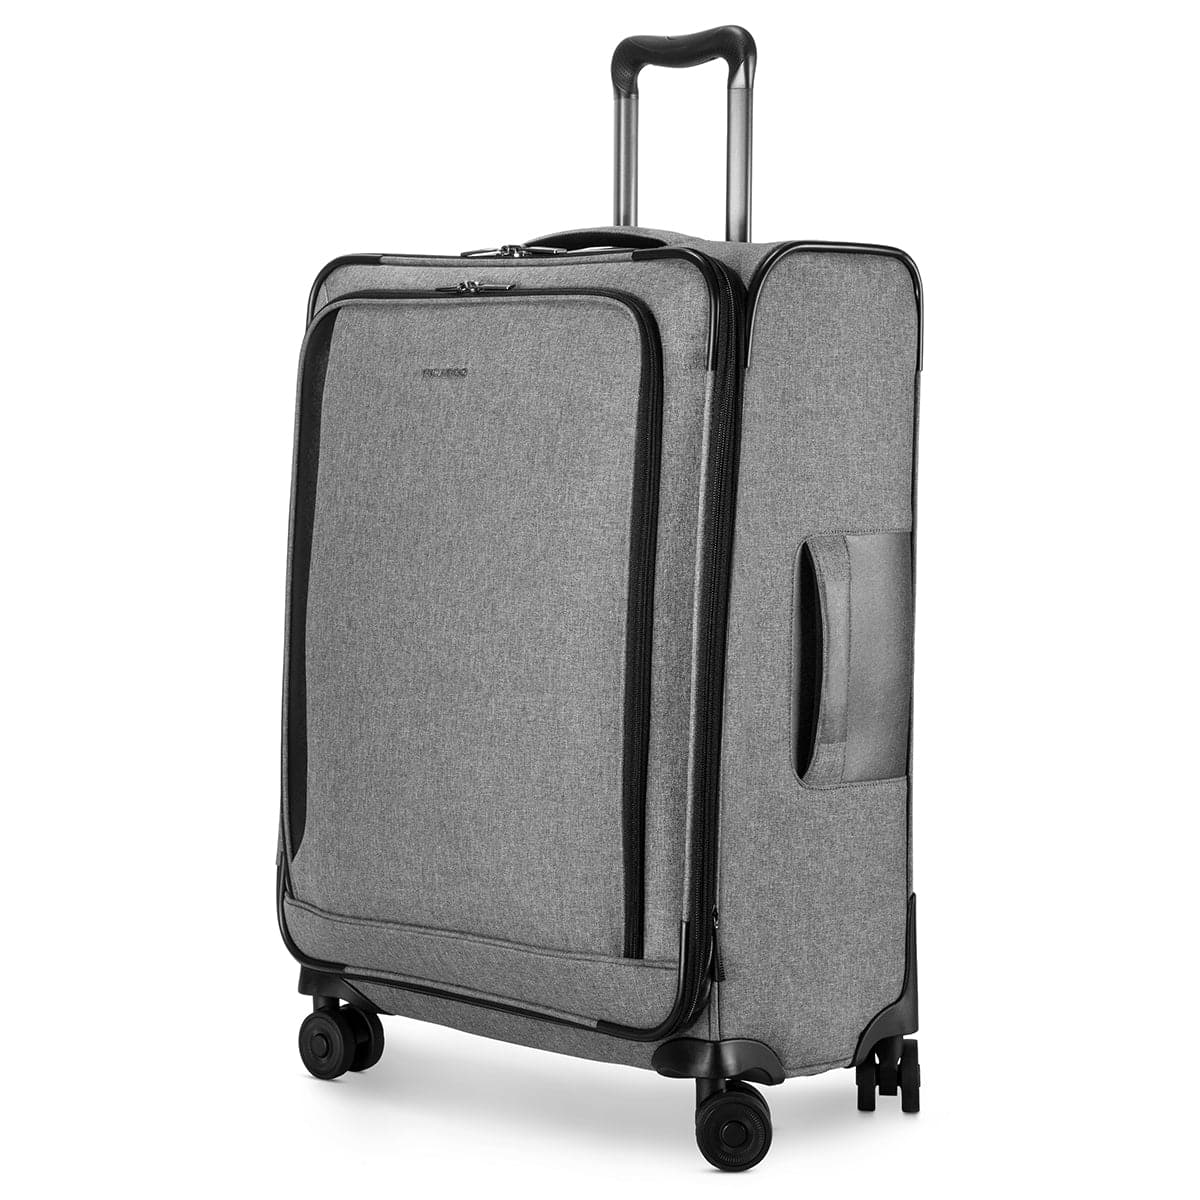 Ricardo Beverly Hills Malibu Bay 3.0  Medium Check-In Luggage